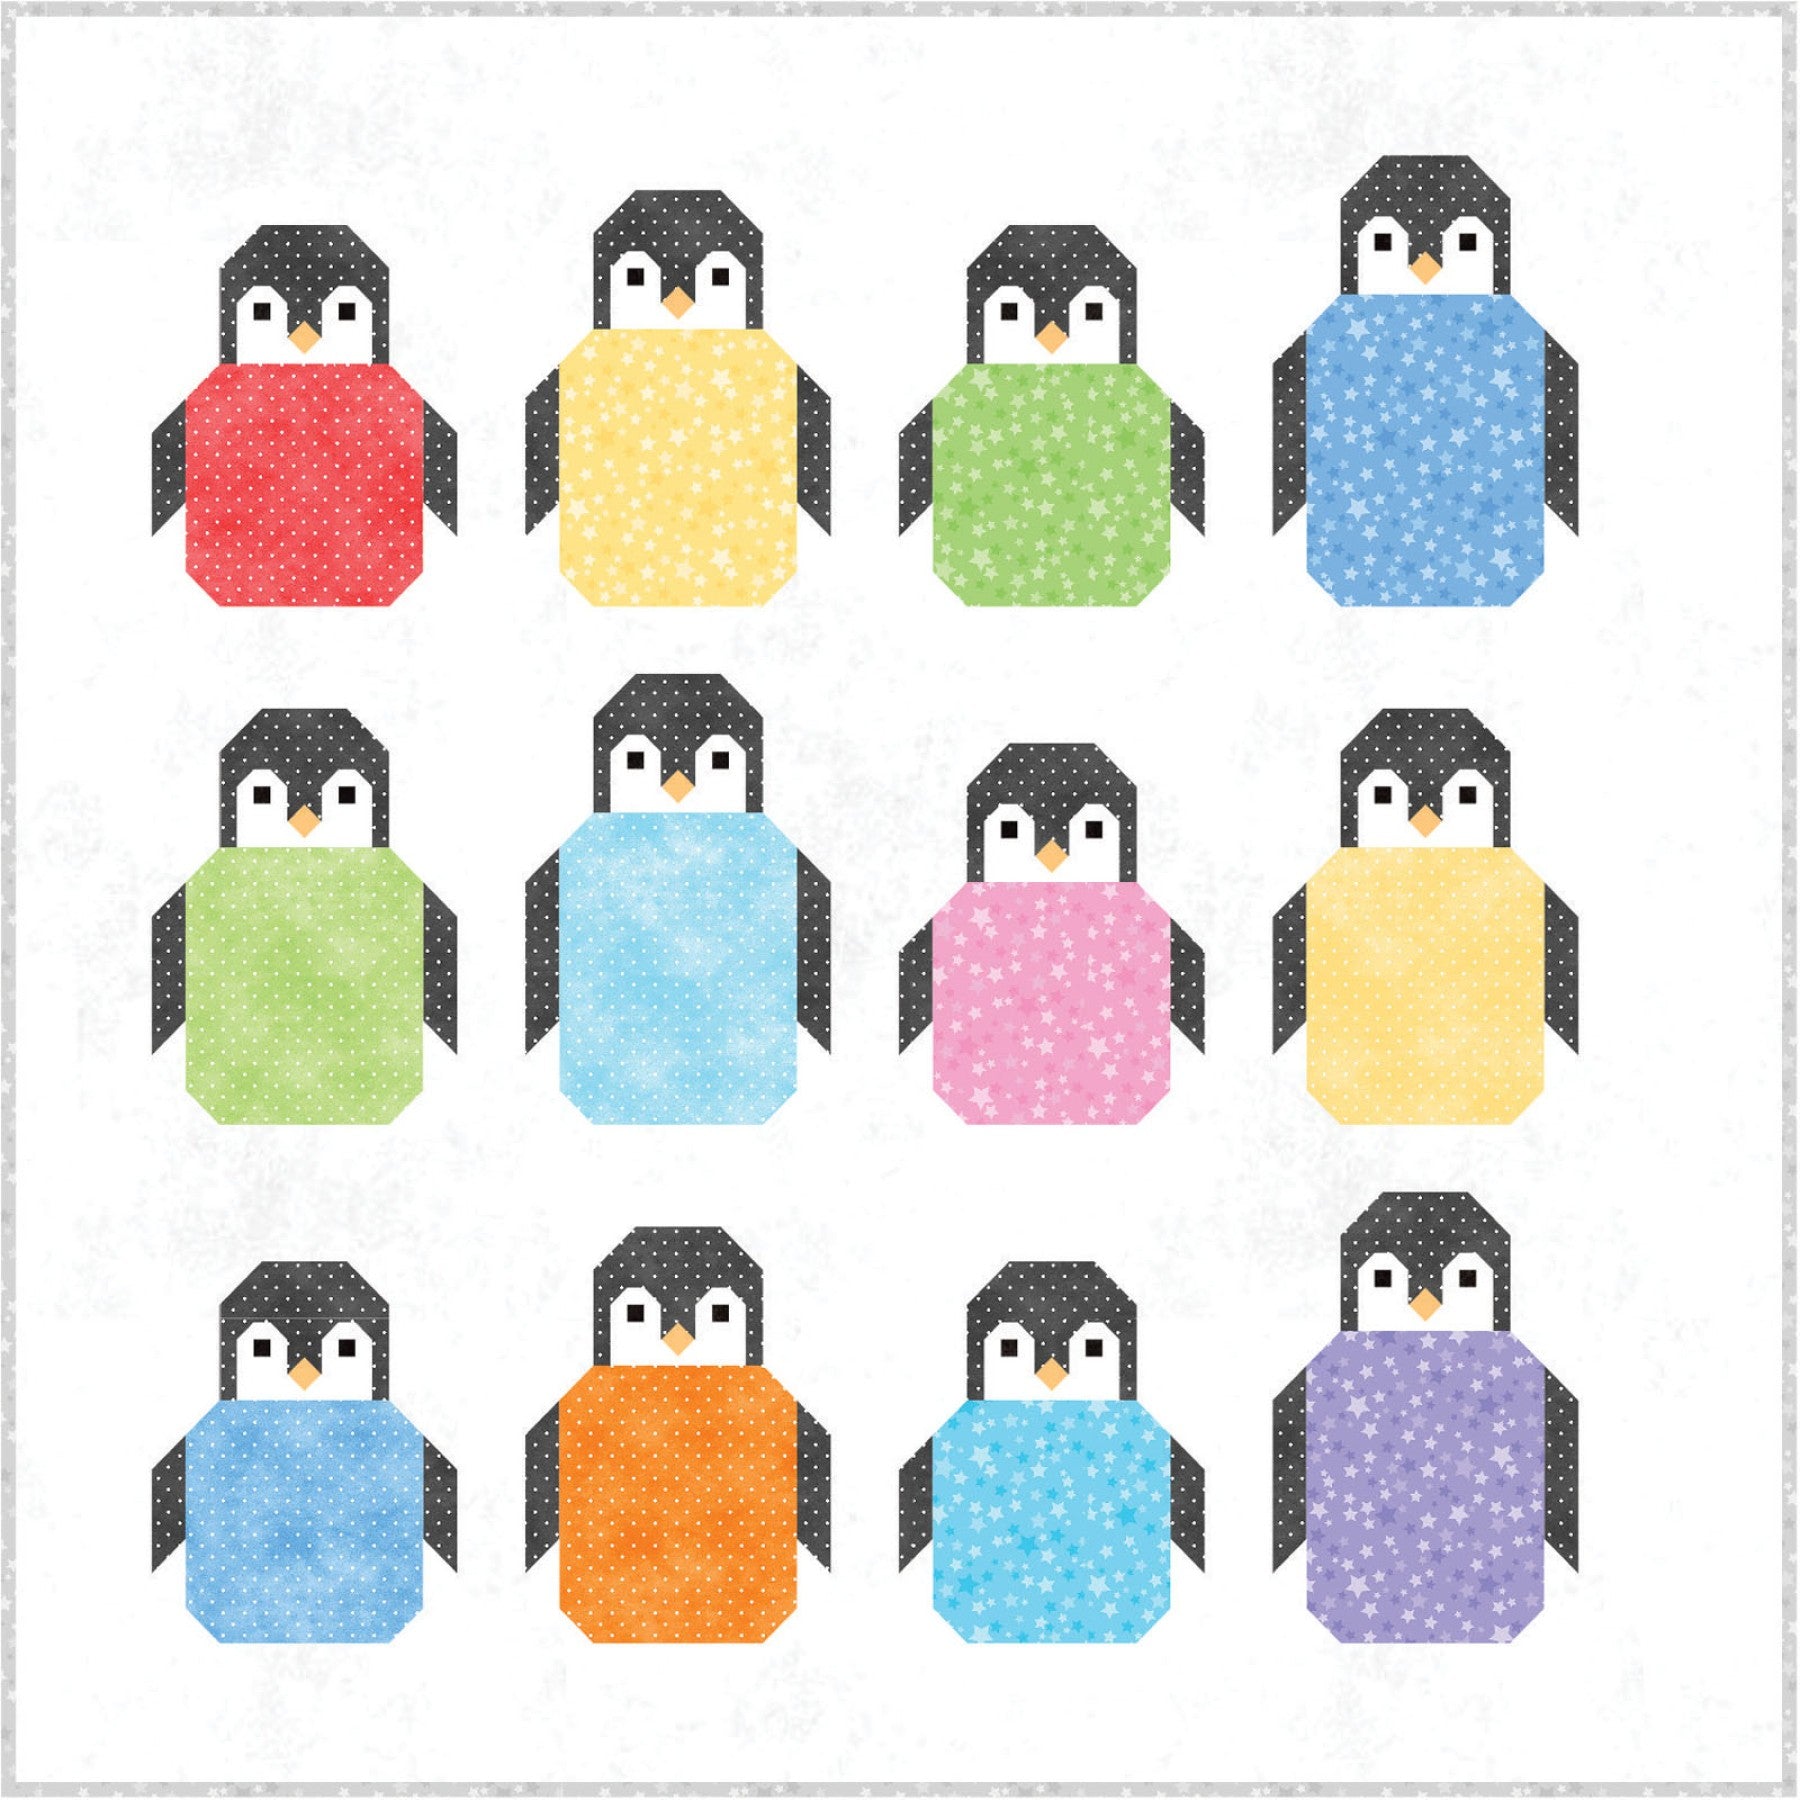 Penguin Party Flannel Quilt Kit